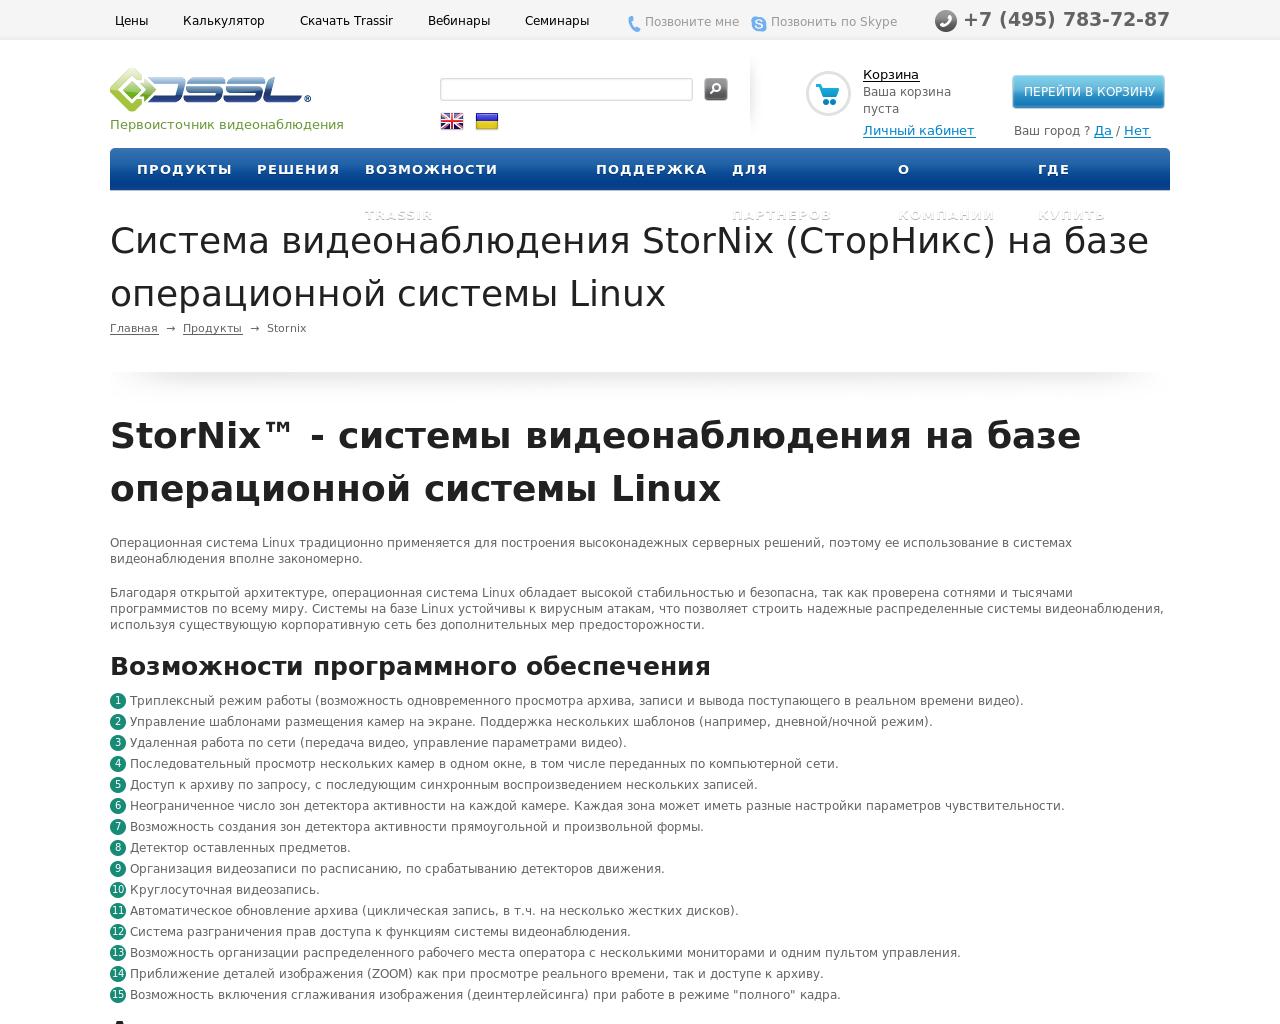 Изображение сайта stornix.ru в разрешении 1280x1024